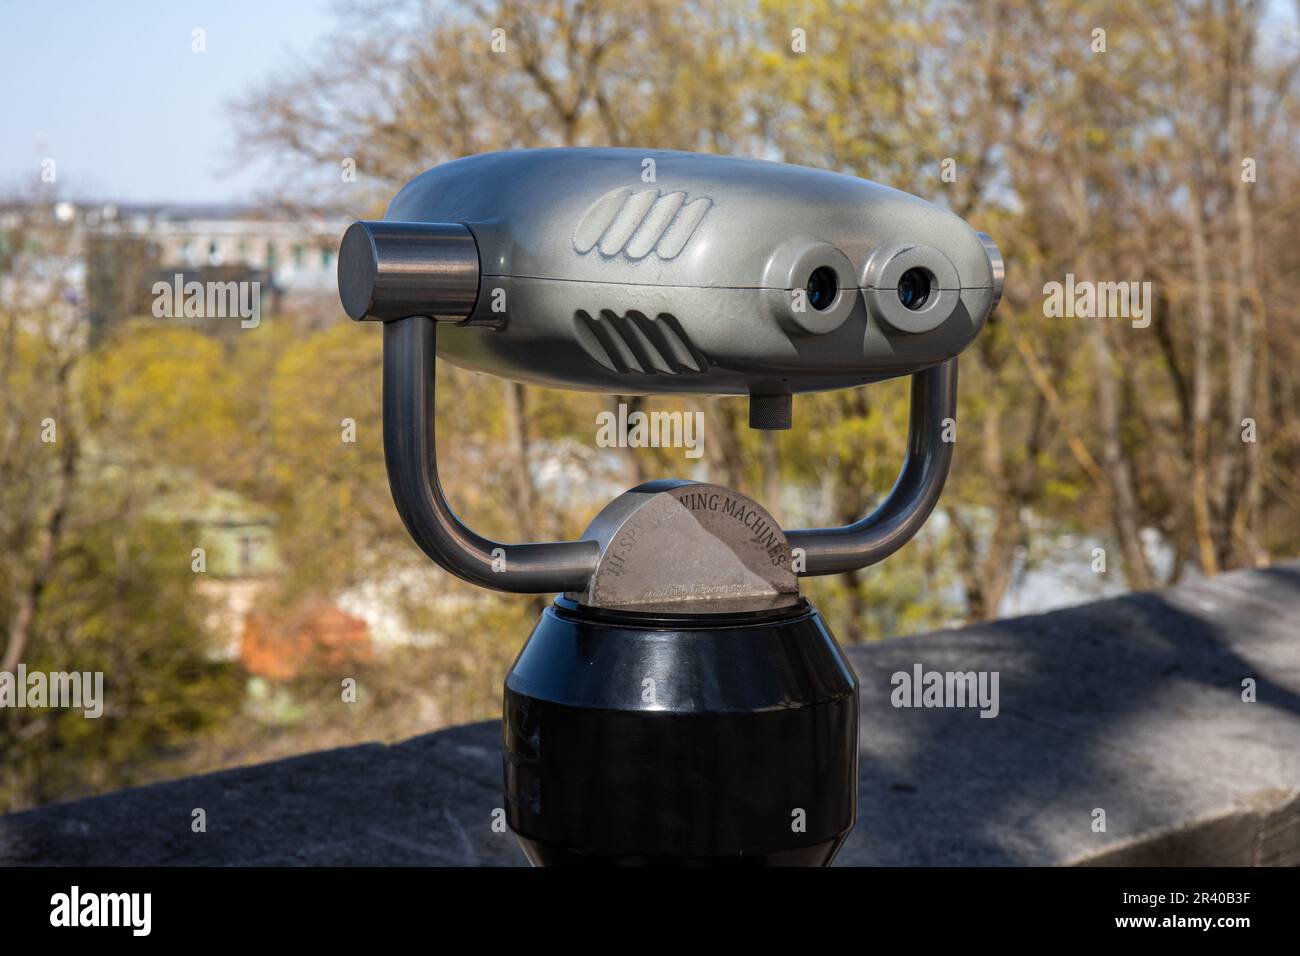 Hi-Spy-Anzeigemaschinen, die Oszilloskope oder Betrachtungsgeräte oder Ferngläser zur Beobachtung verwenden Stockfoto